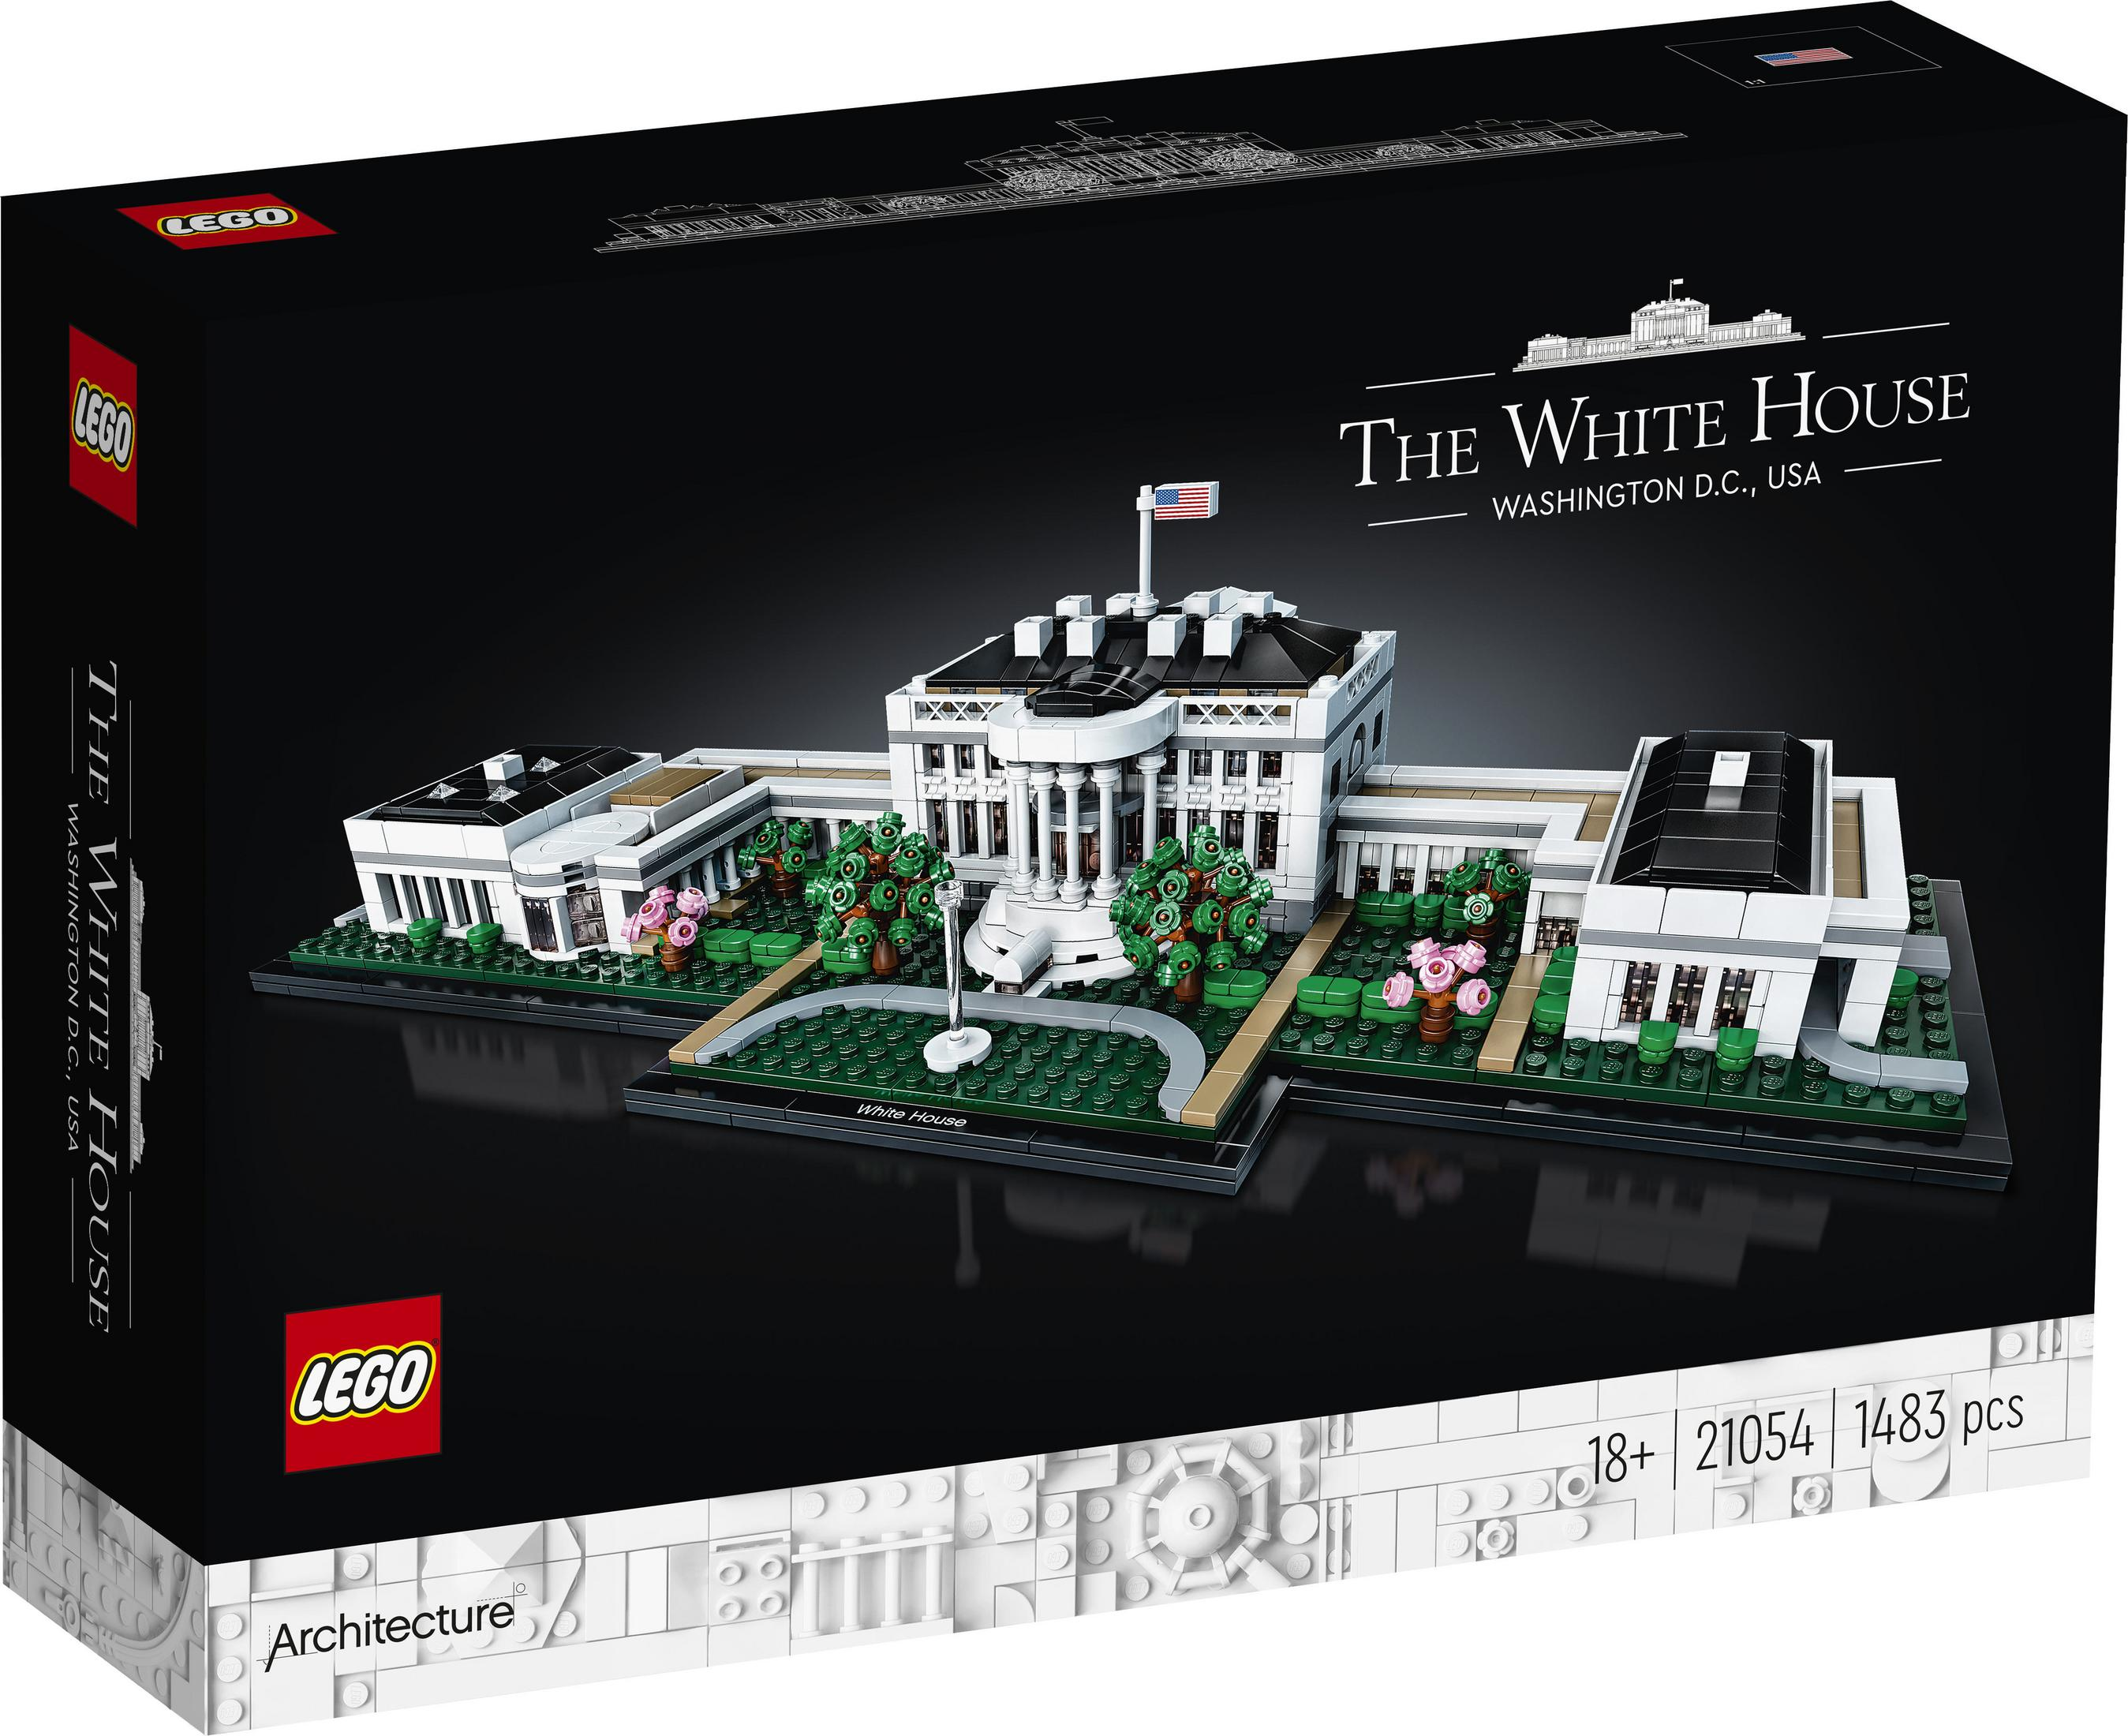 LEGO WEISSE 21054 LEGO HAUS DAS Architecture